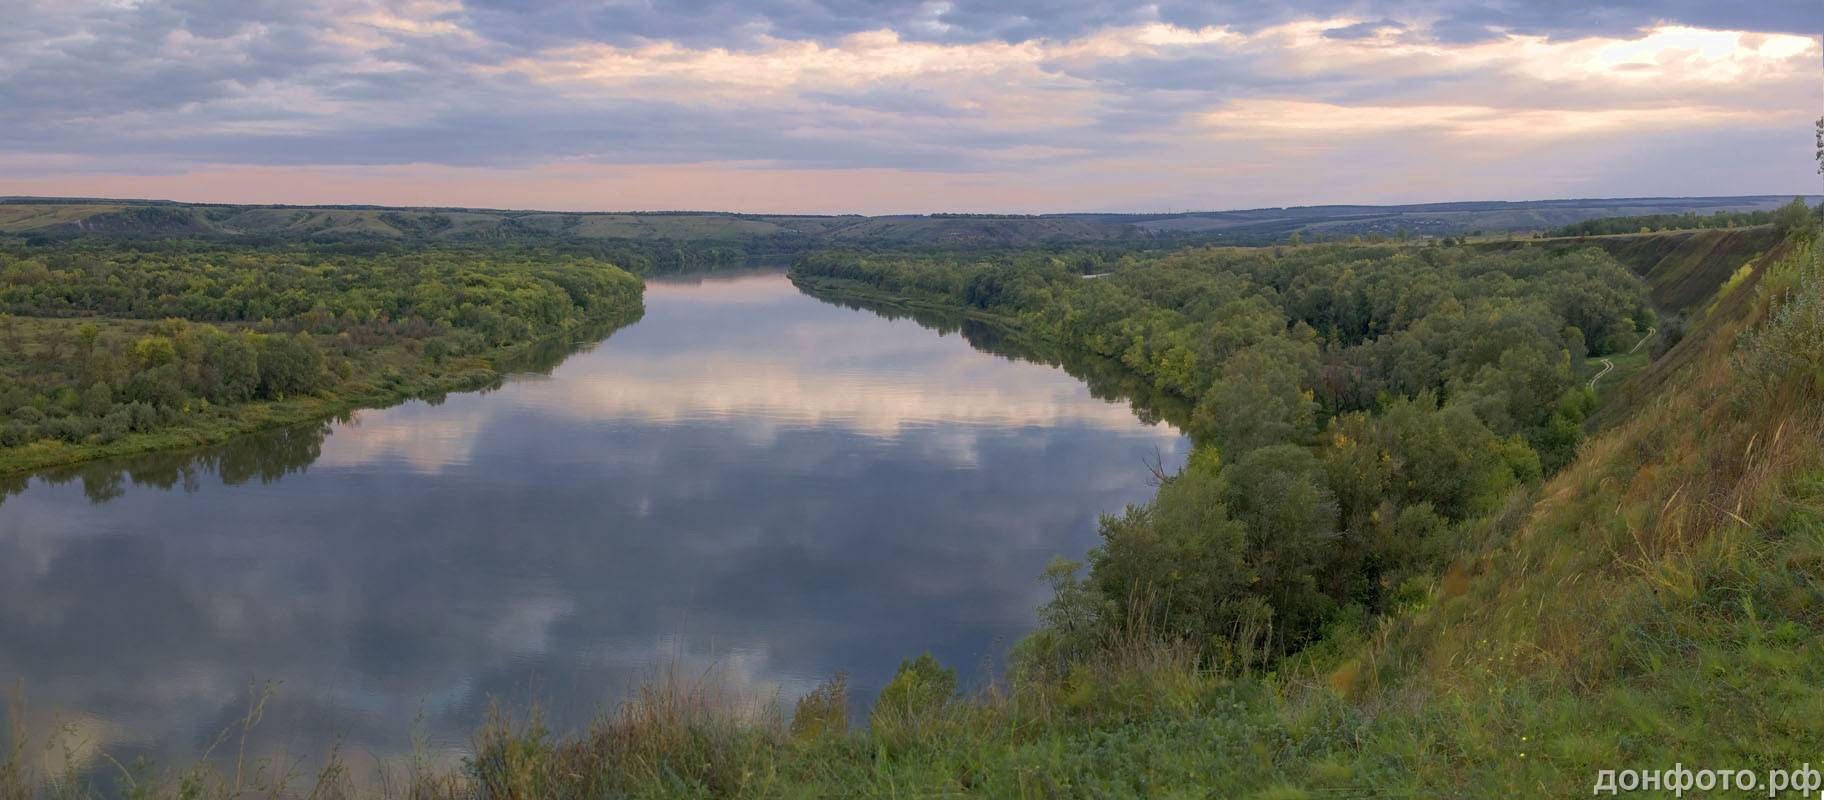 Река Дон в Рязанской области